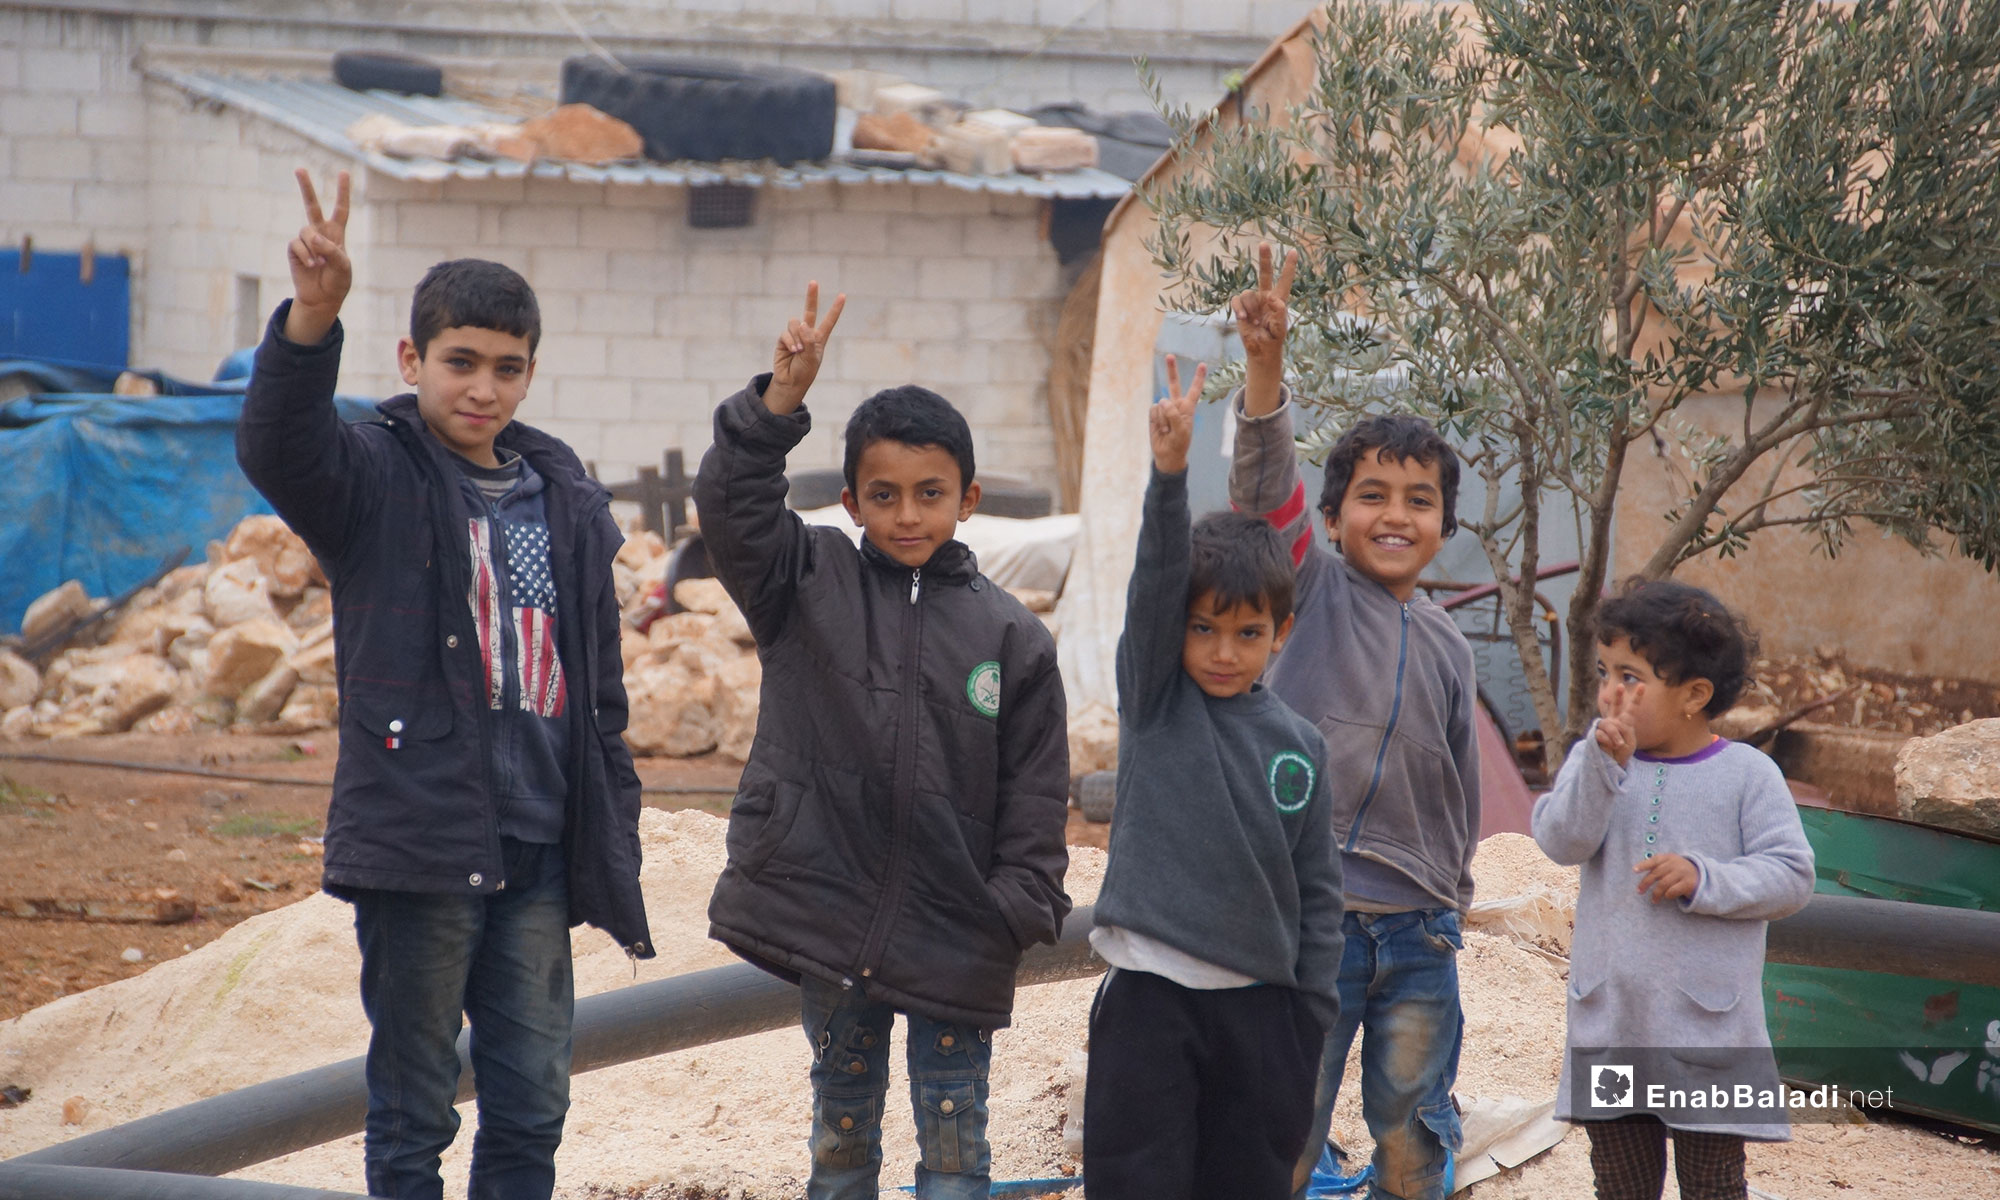 أطفال من ريف حماة في قرية "كرناز الجديدة" في ريف إدلب - 18 من كانو الأول 2018 (عنب بلدي)